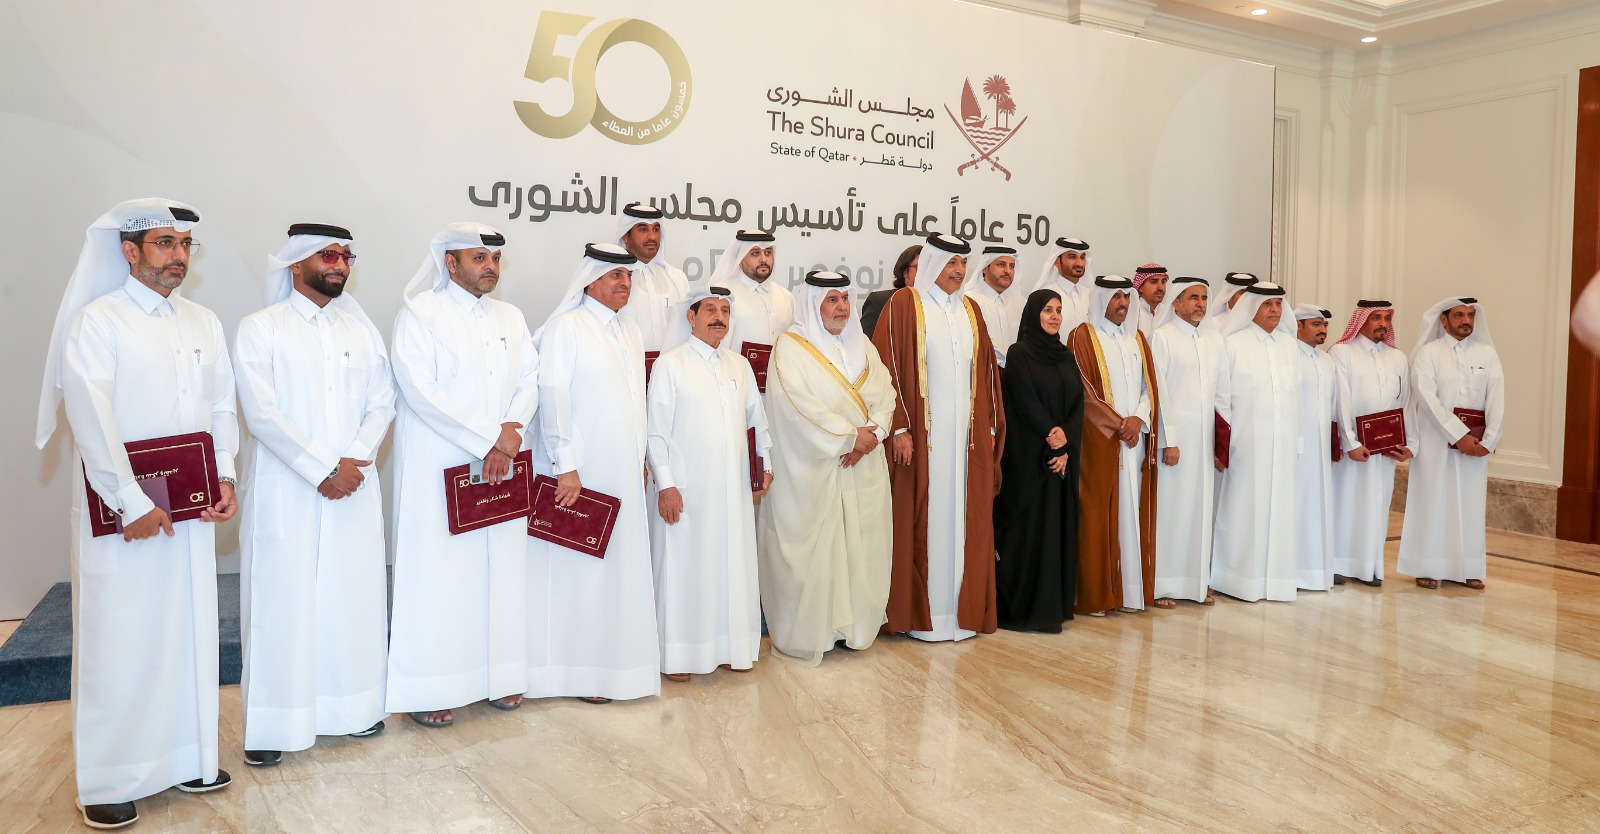 (الشورى القطري) يحتفل بمرور 50 عاما على تأسيسه